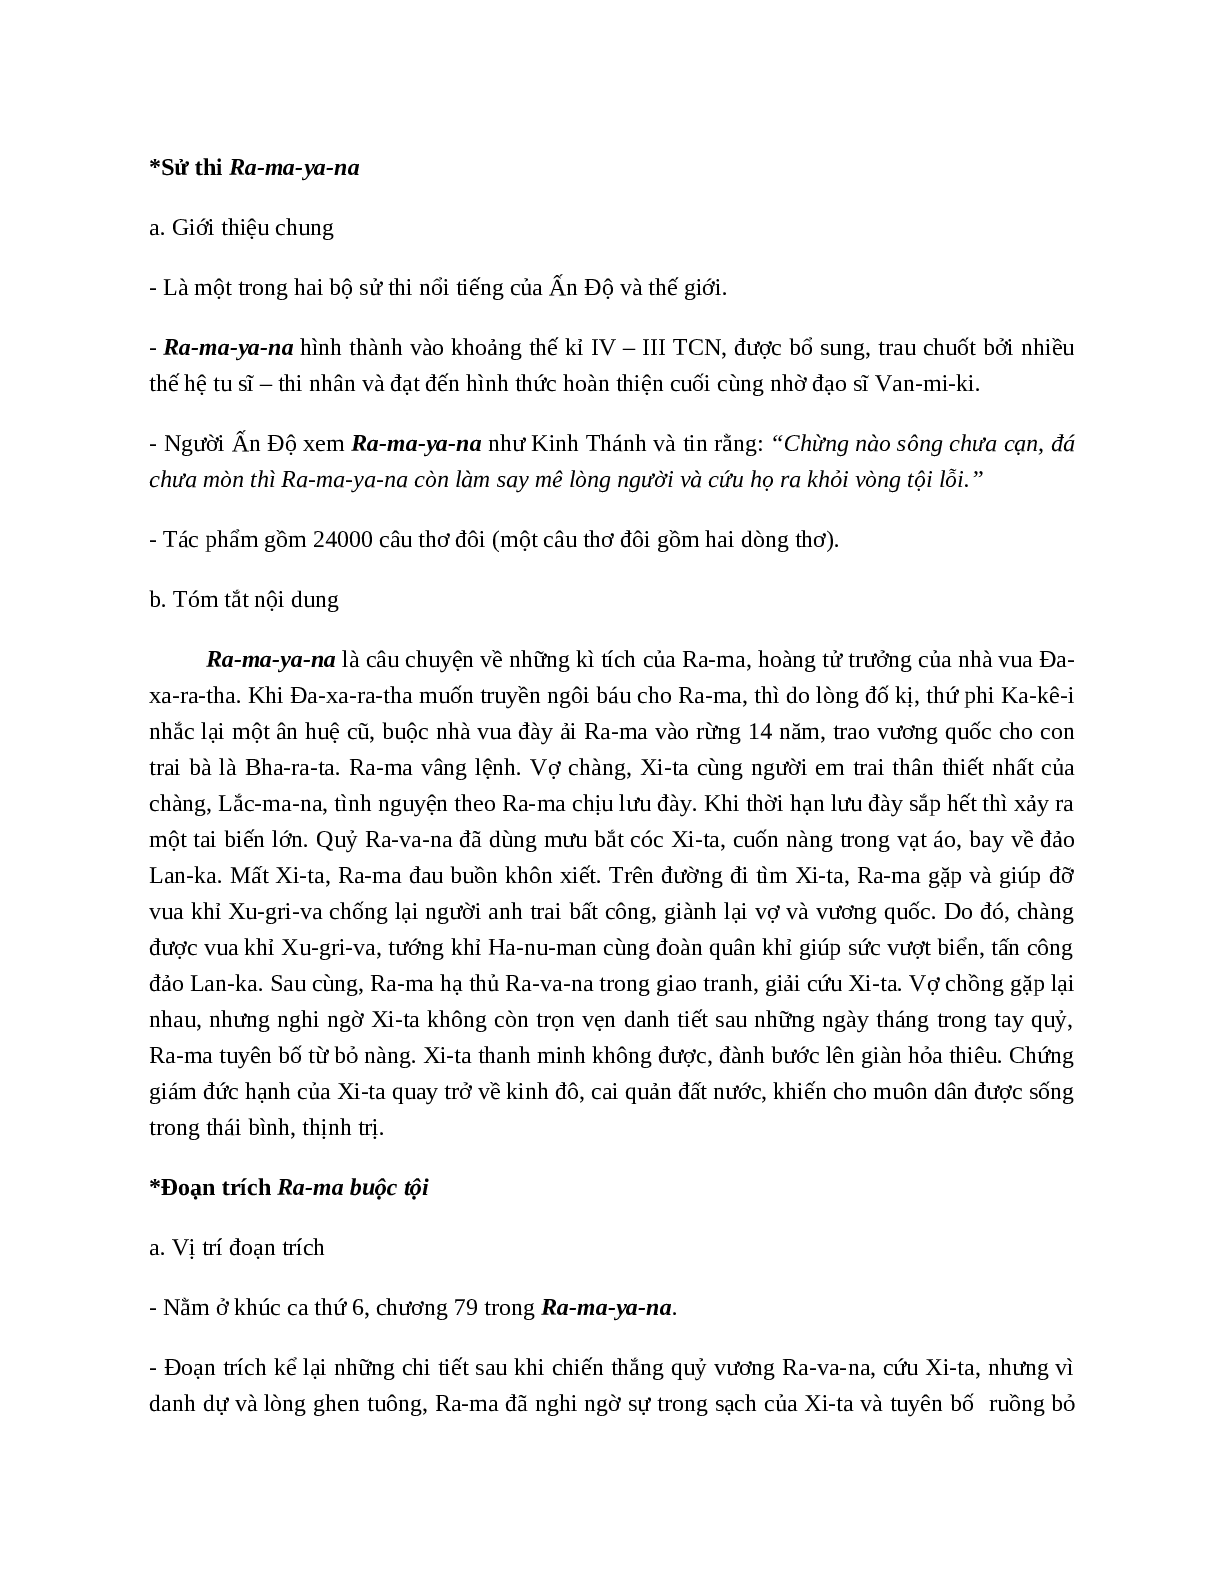 Ra-Ma buộc tội - Tác giả tác phẩm - Ngữ văn lớp 10 (trang 2)